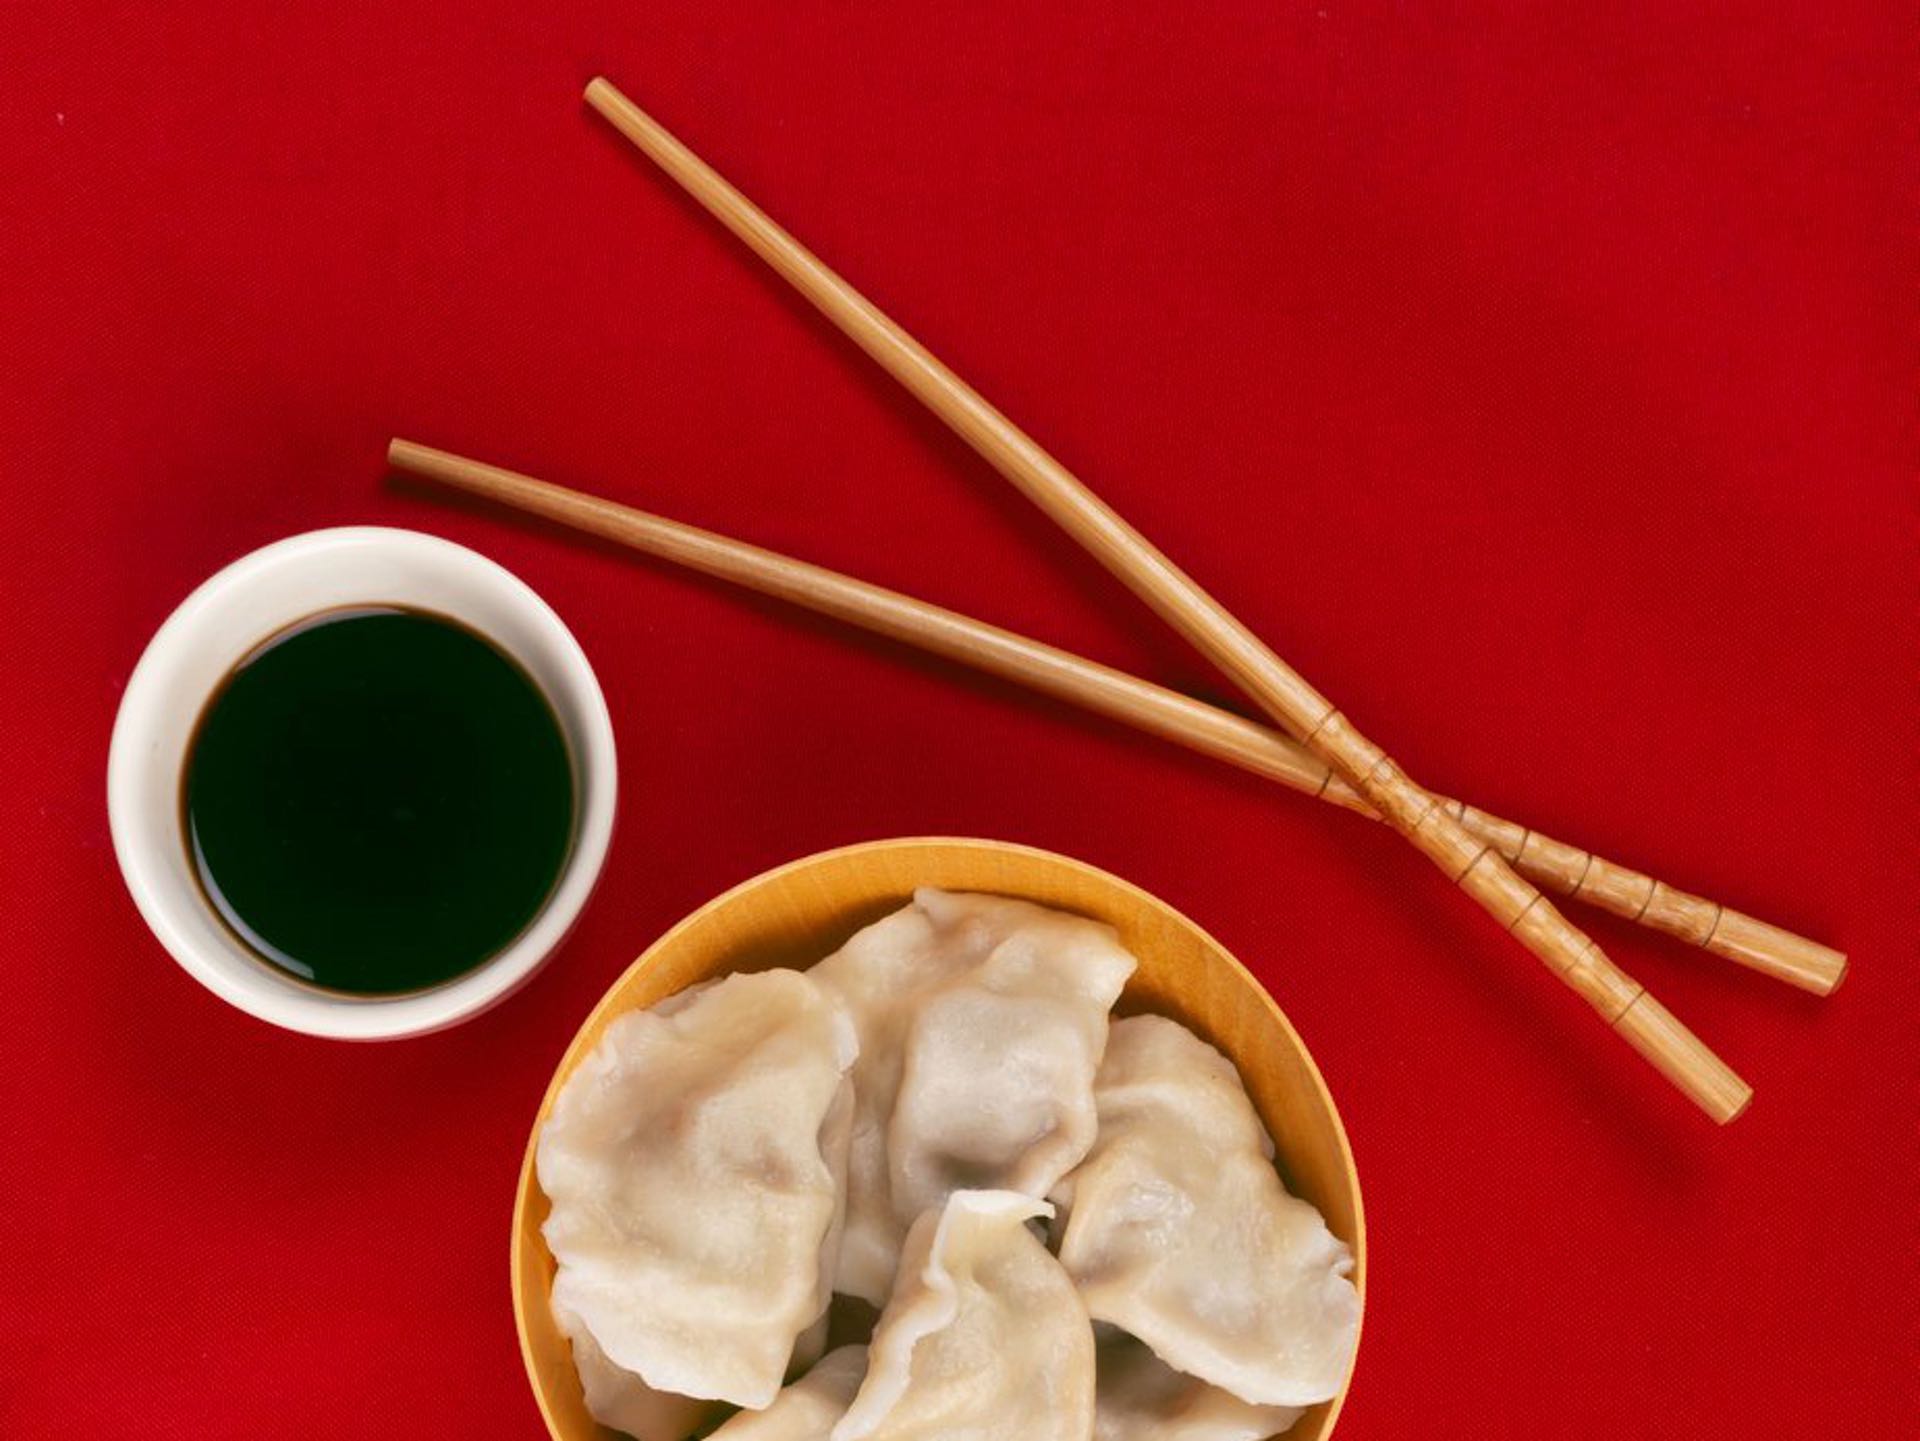 Πως να φας κινέζικο φαγητό υγιεινά και αποκομίζοντας τα περισσότερα οφέλη